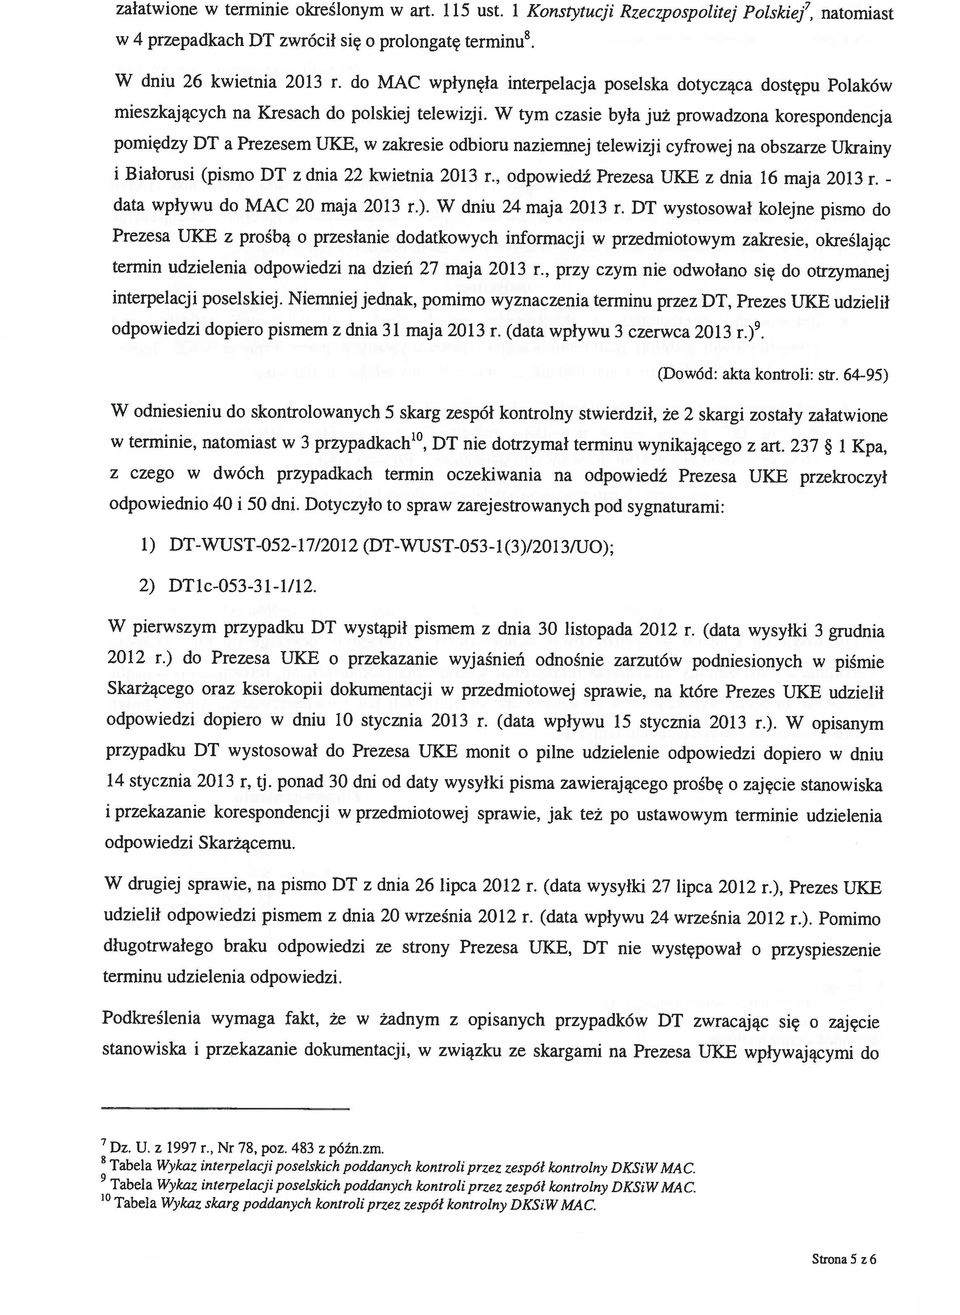 do MAC wpłynęła interpelacja poselska dotycząca dostępu Polaków pomiędzy DT a Prezesem UKE, w zakresie odbioru naziemnej telewizji cyfrowej na obszarze Ukrainy data wpływu do MAC 20 maja 2013 r.).